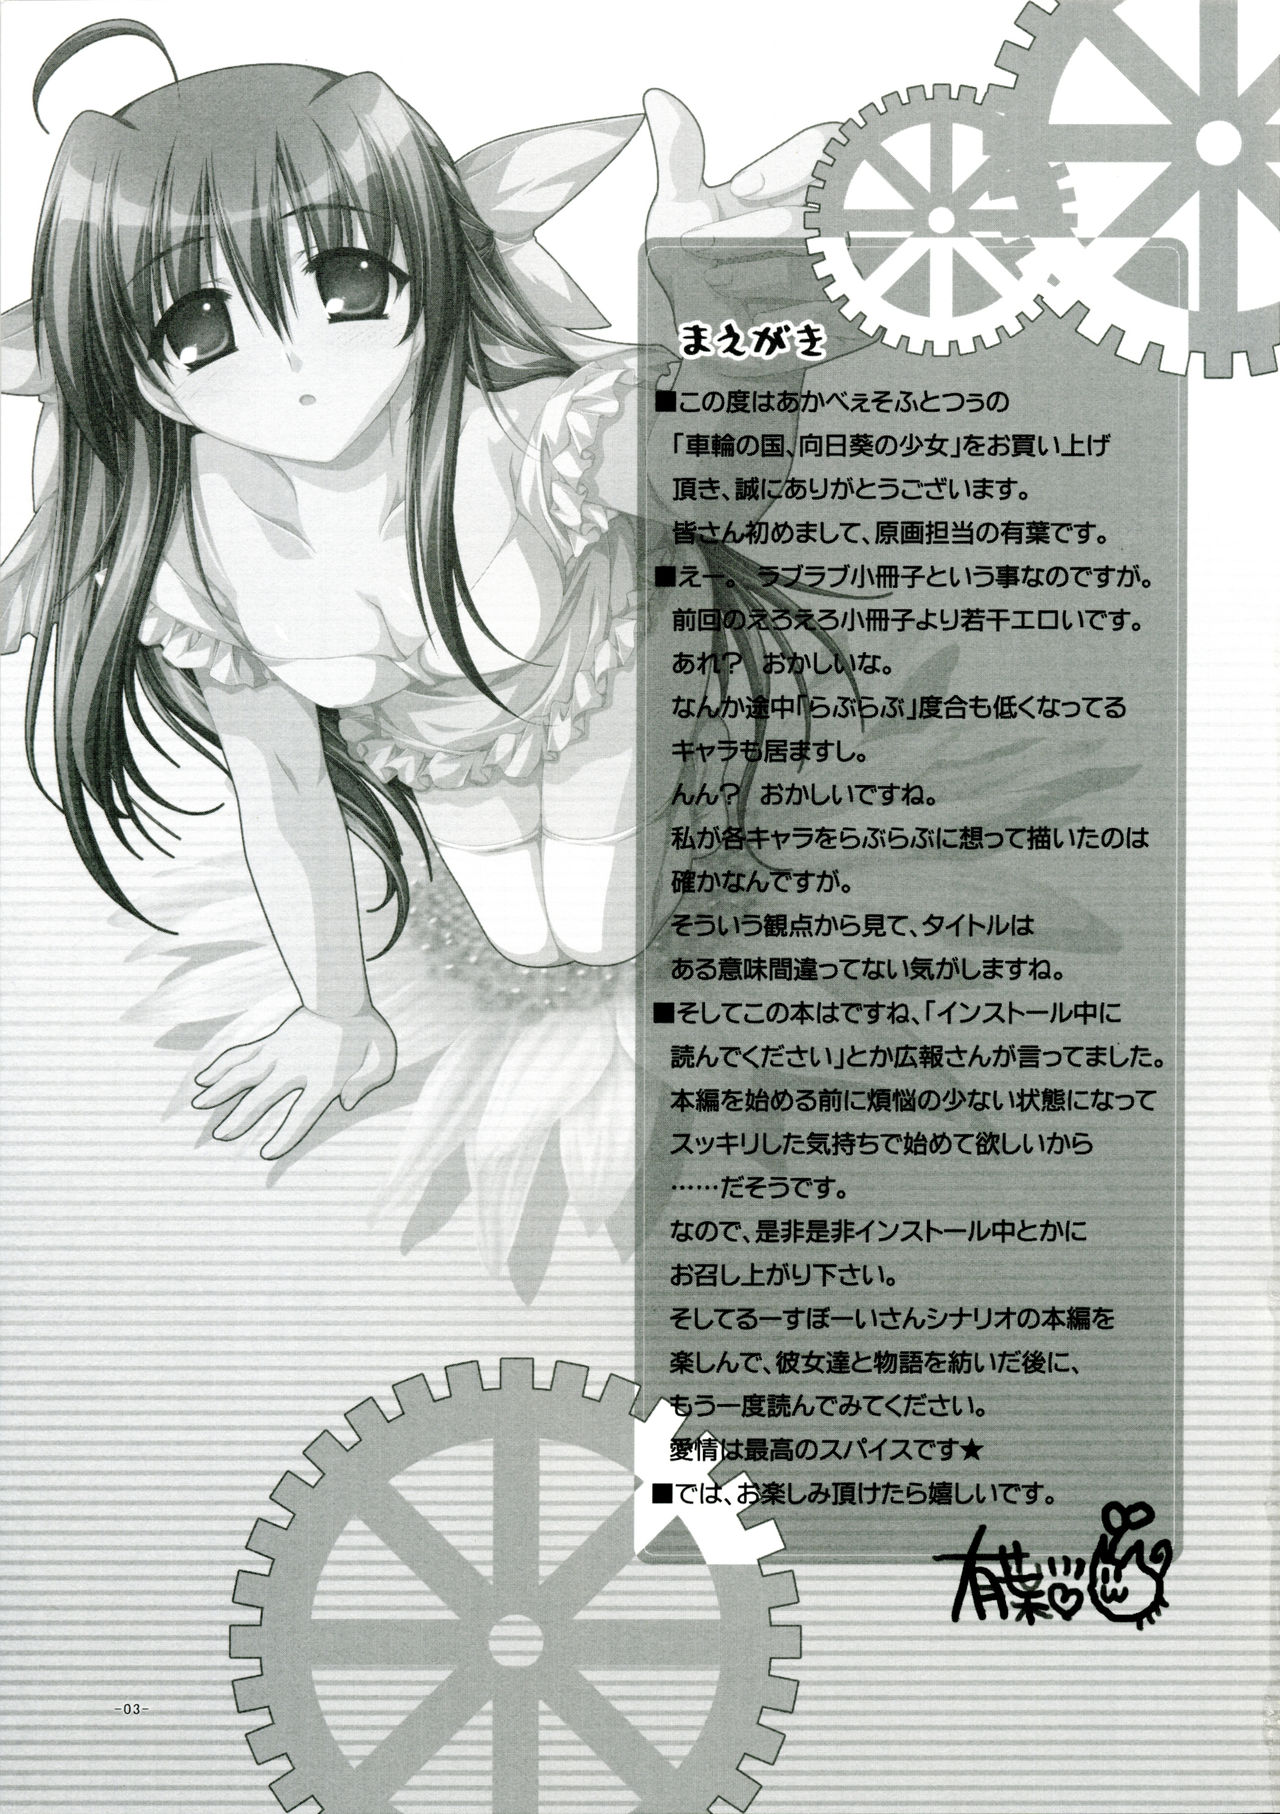 [AKABEi SOFT 2] Sharin no Kuni, Himawari no Shoujo Tokuten Love Love Shousasshi [あかべぇそふとつぅ] 車輪の国、向日葵の少女 特典らぶらぶ小冊子